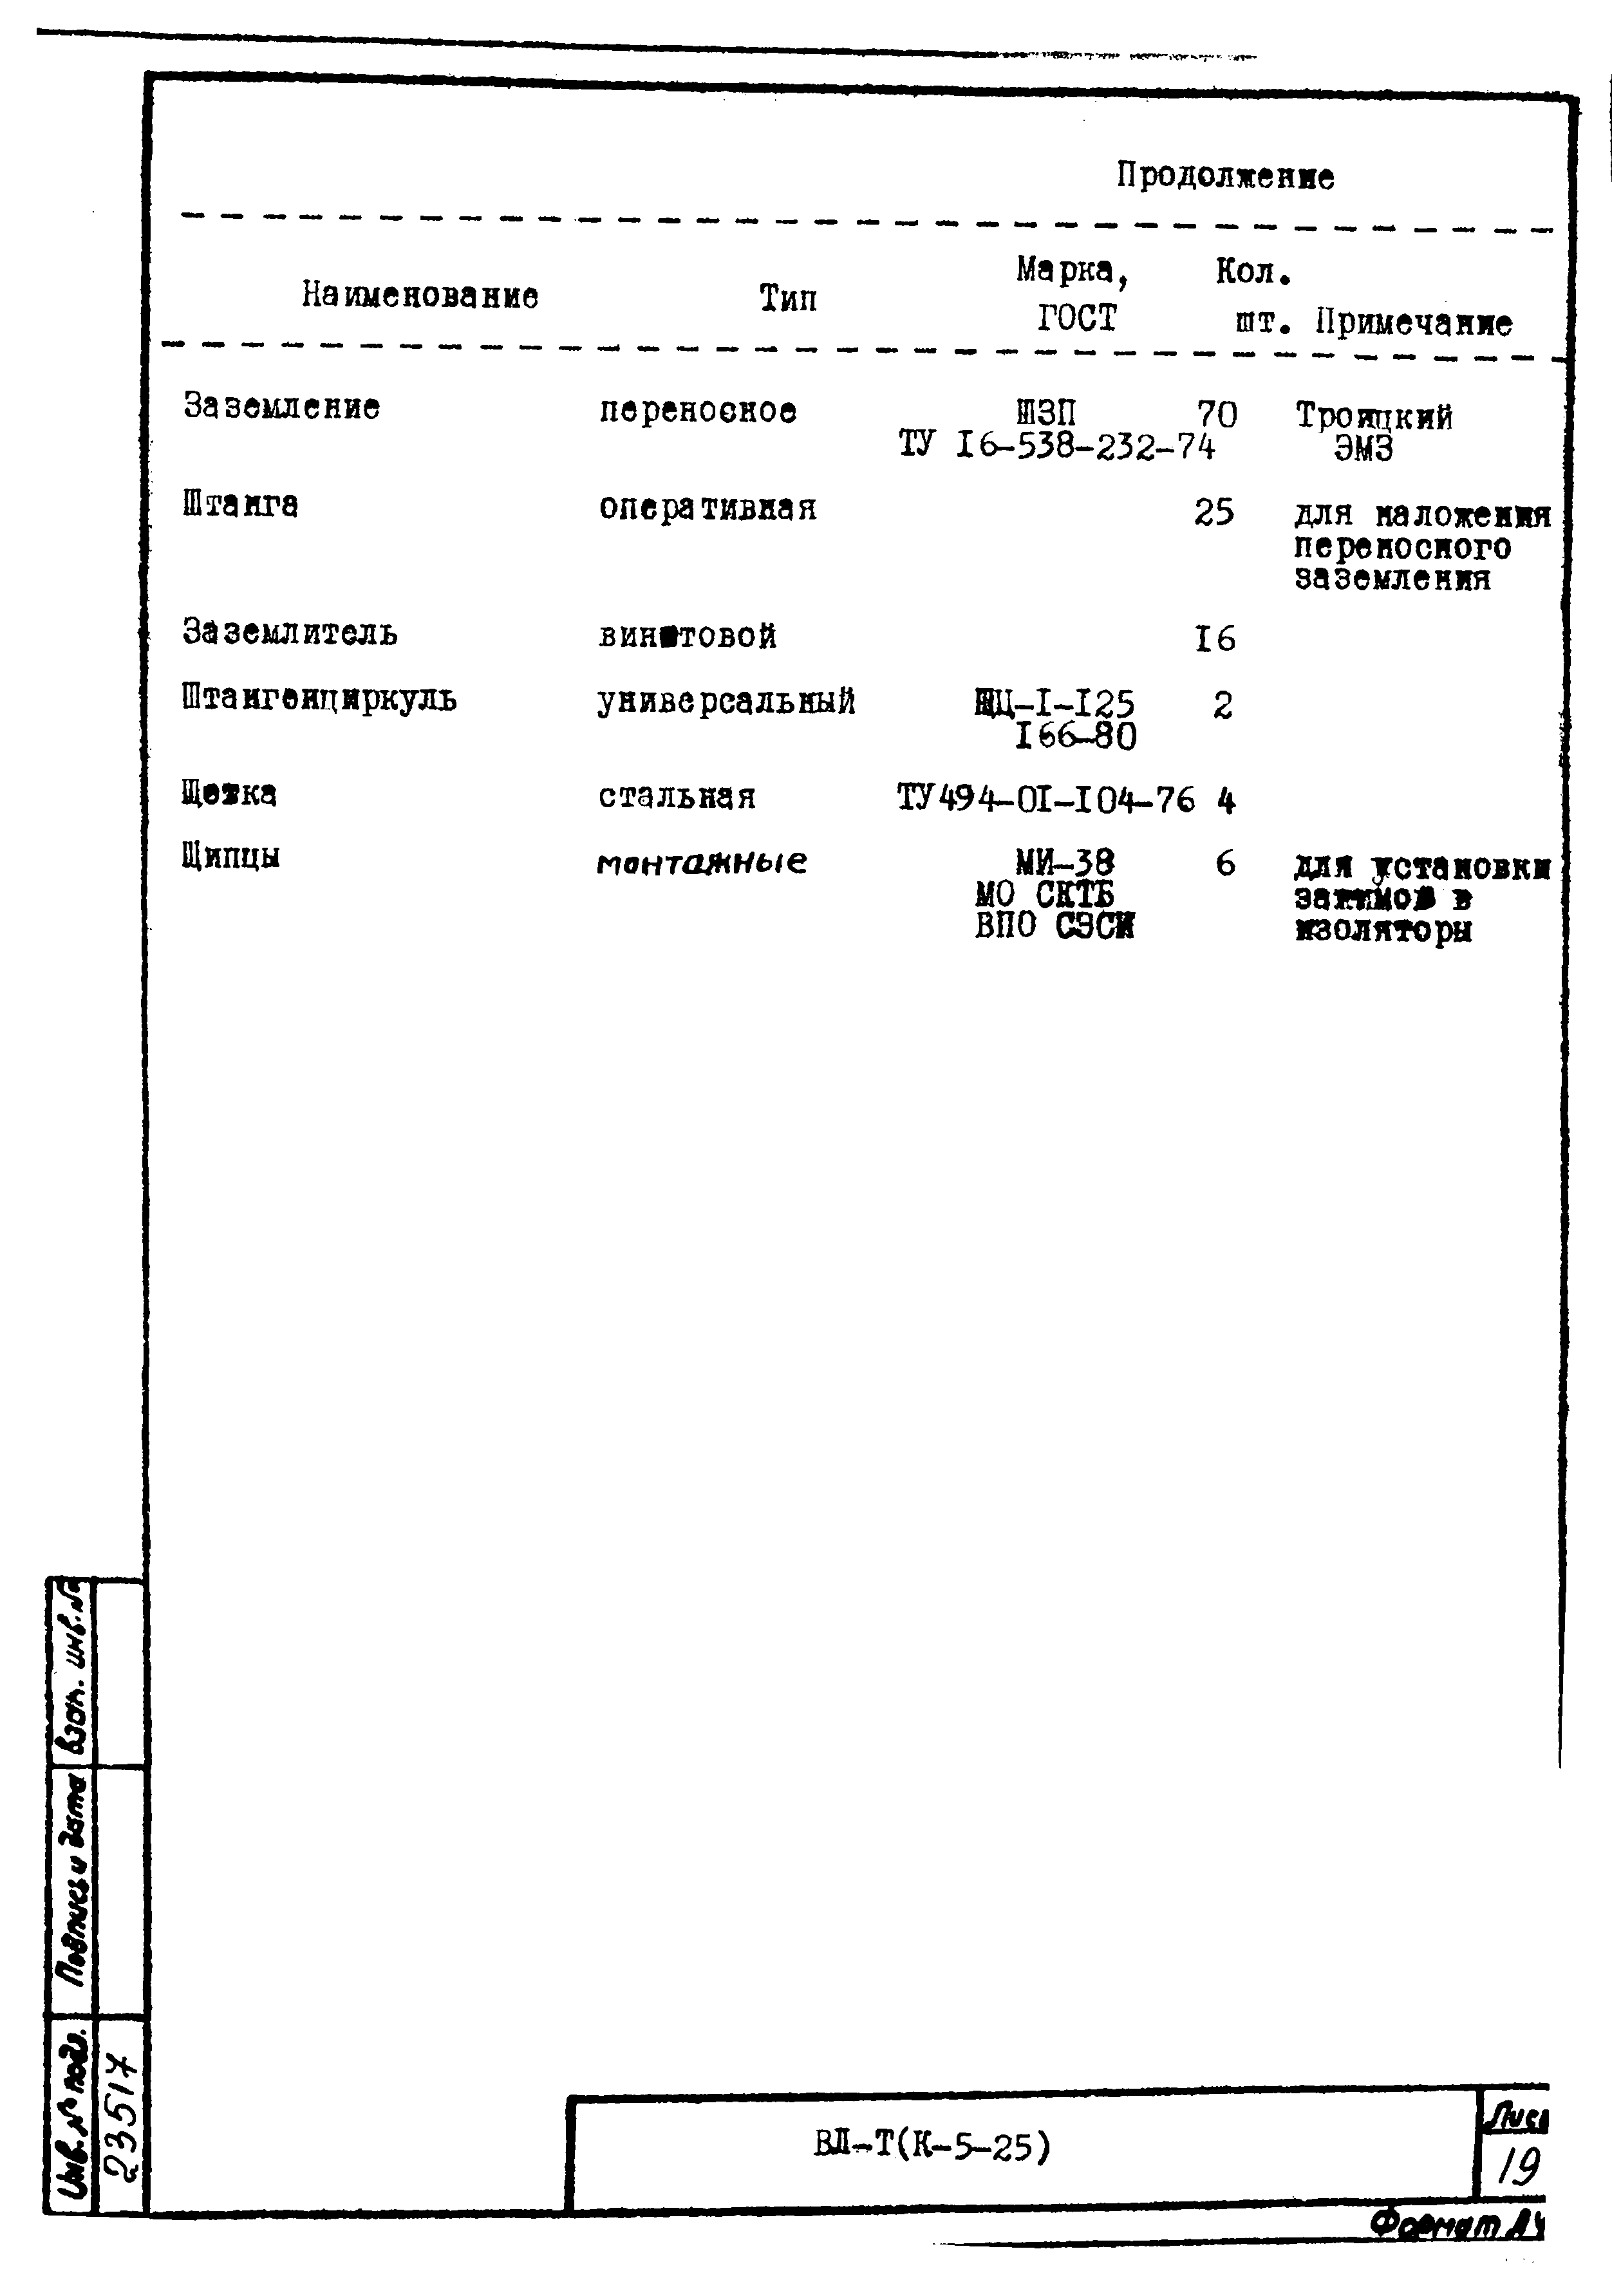 Технологическая карта К-5-25-35